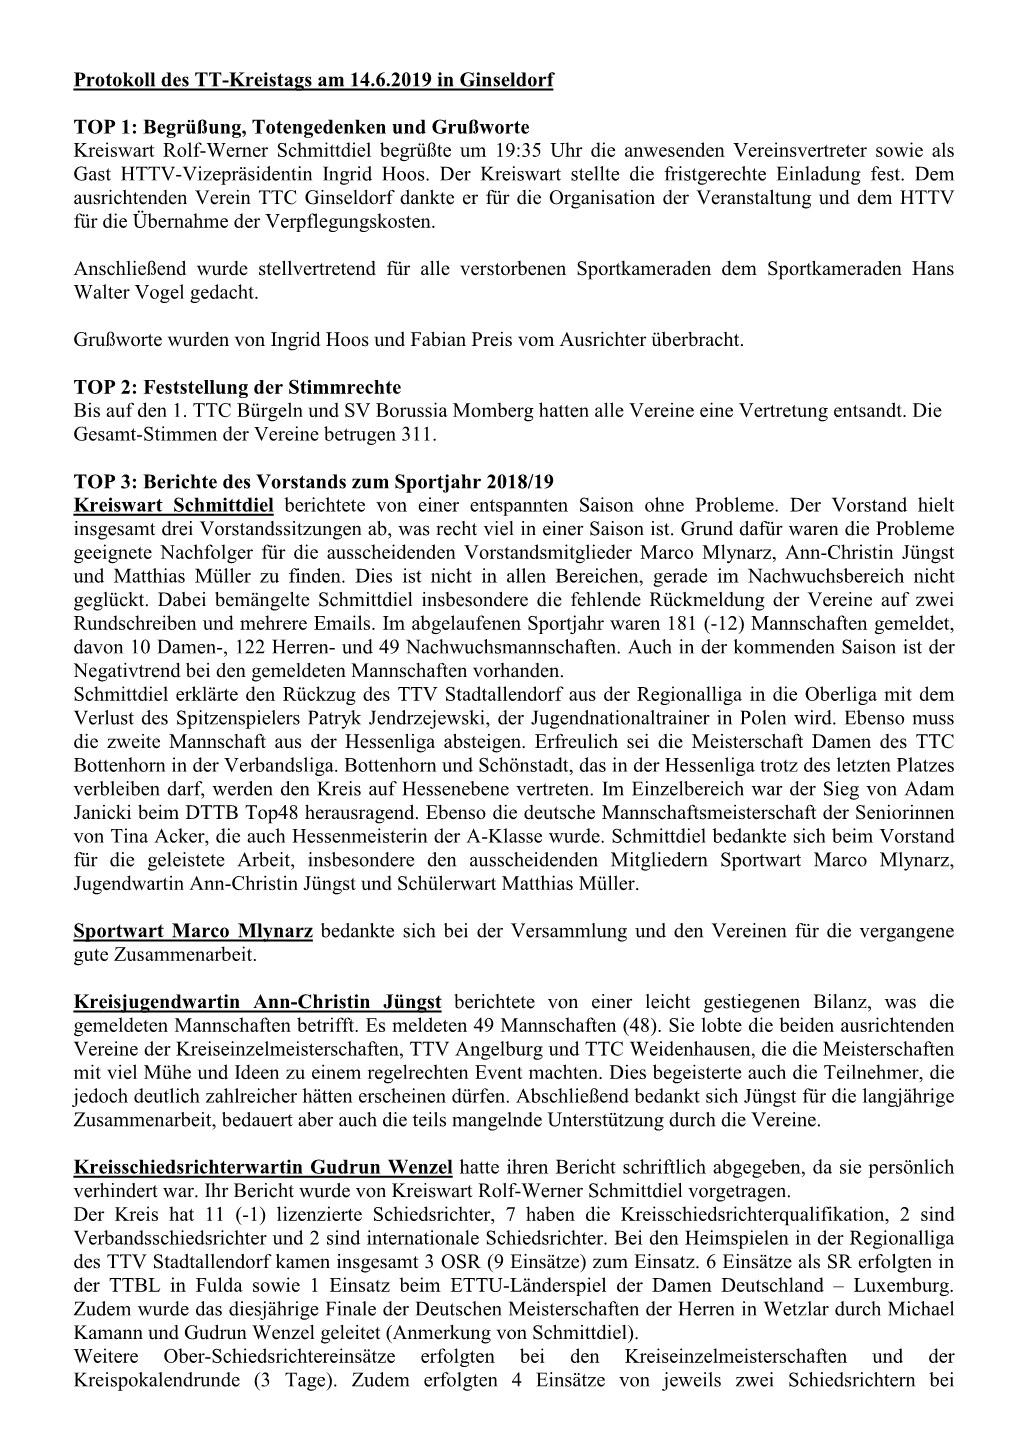 Protokoll Des Kreistages Vom 14.06.2019 in Ginseldorf